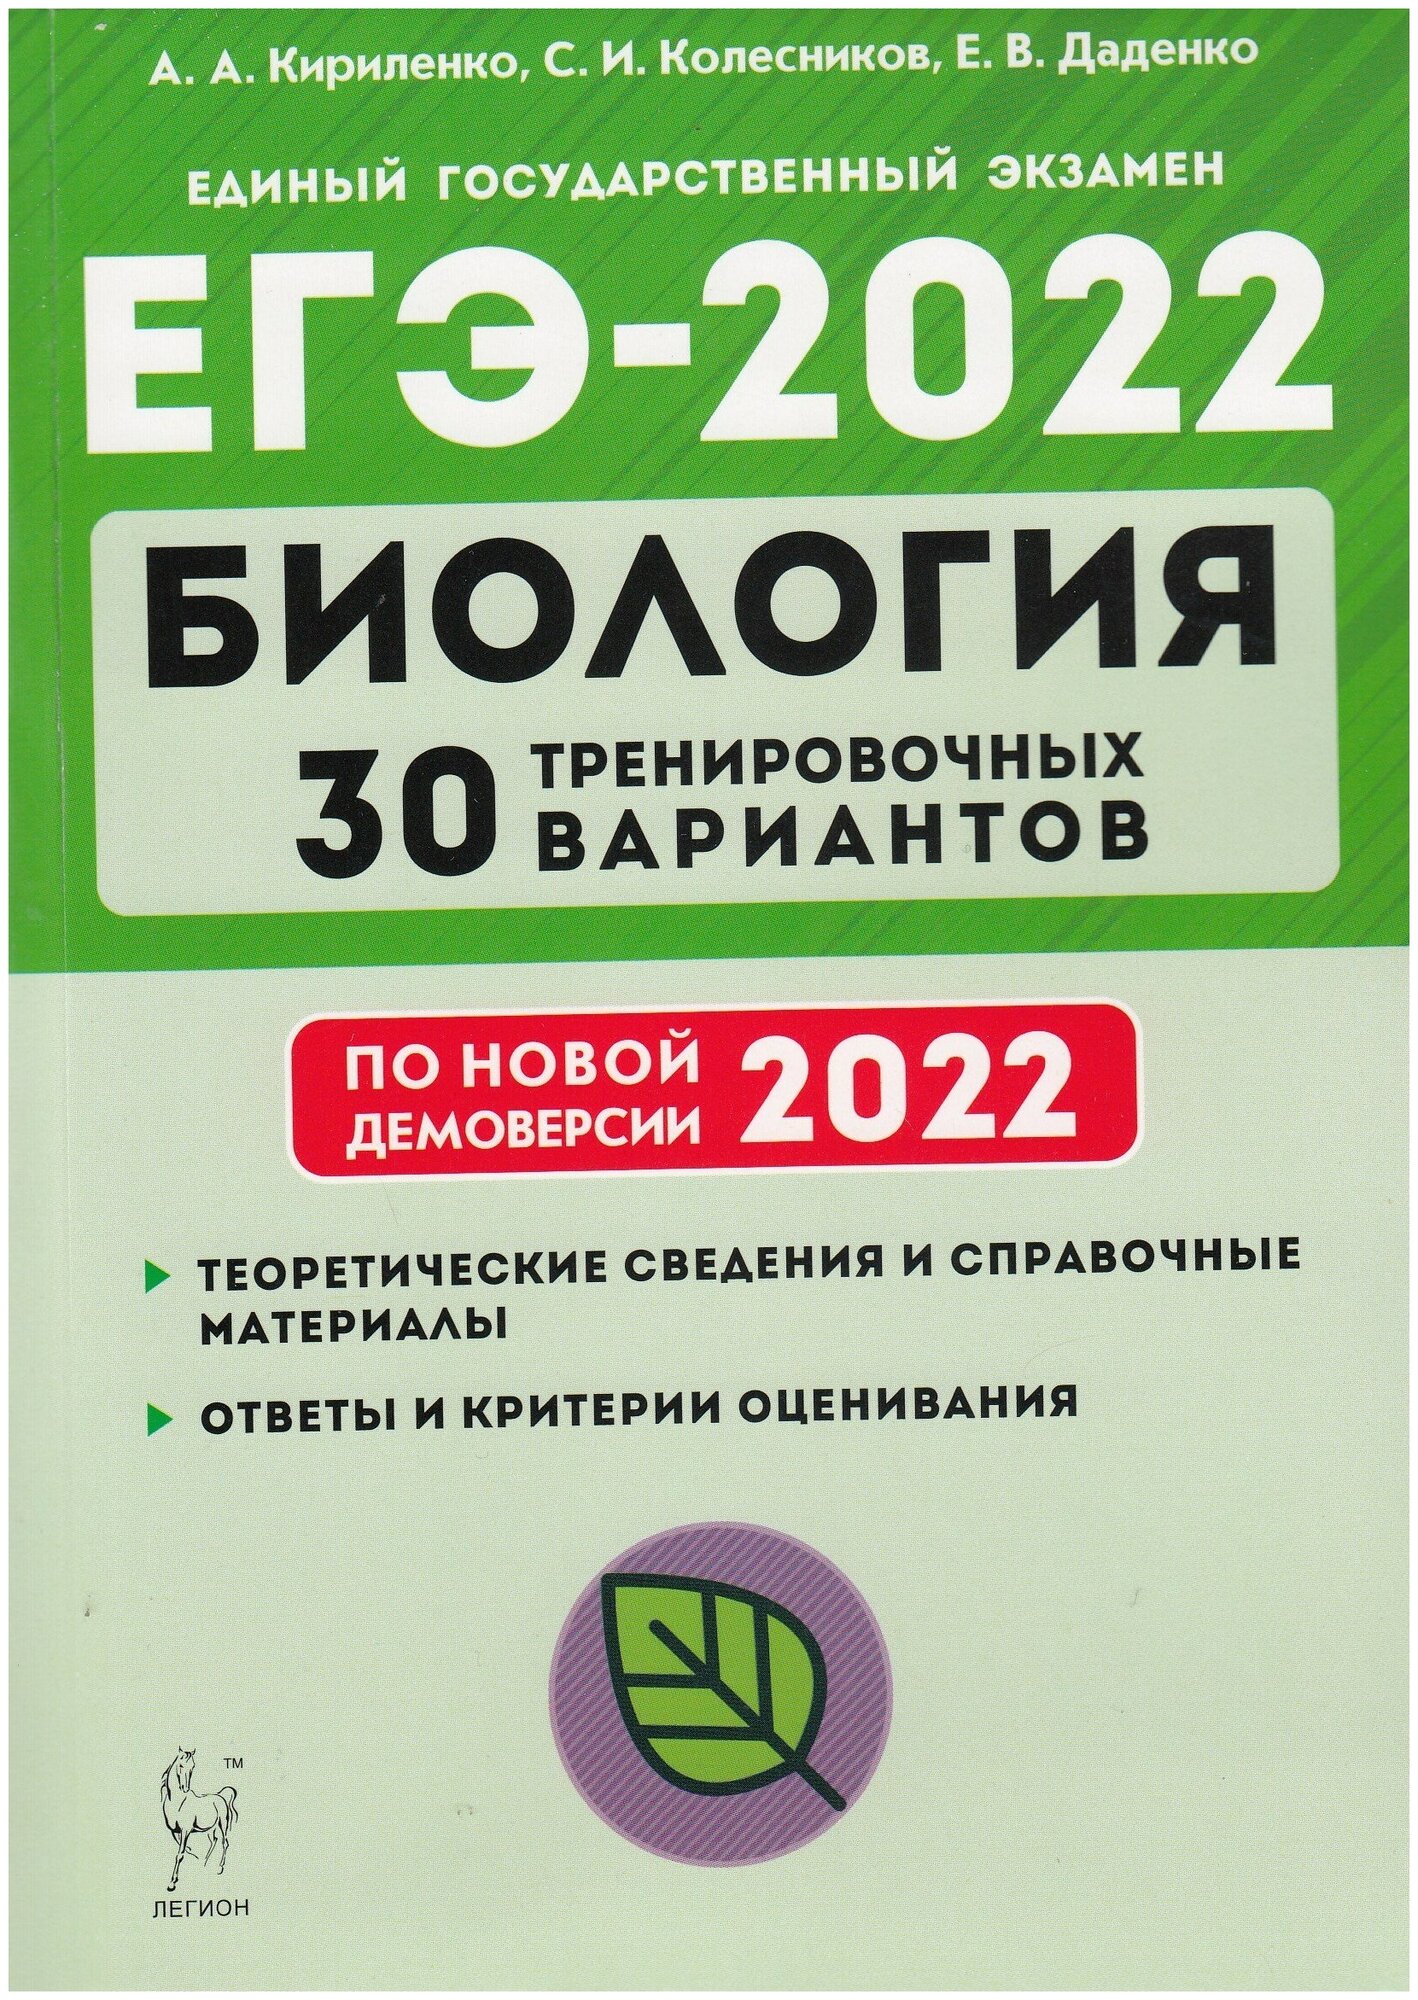 ЕГЭ-2022 Биология. 30 тренировочных вариантов по демоверсии 2022 года - фото №1